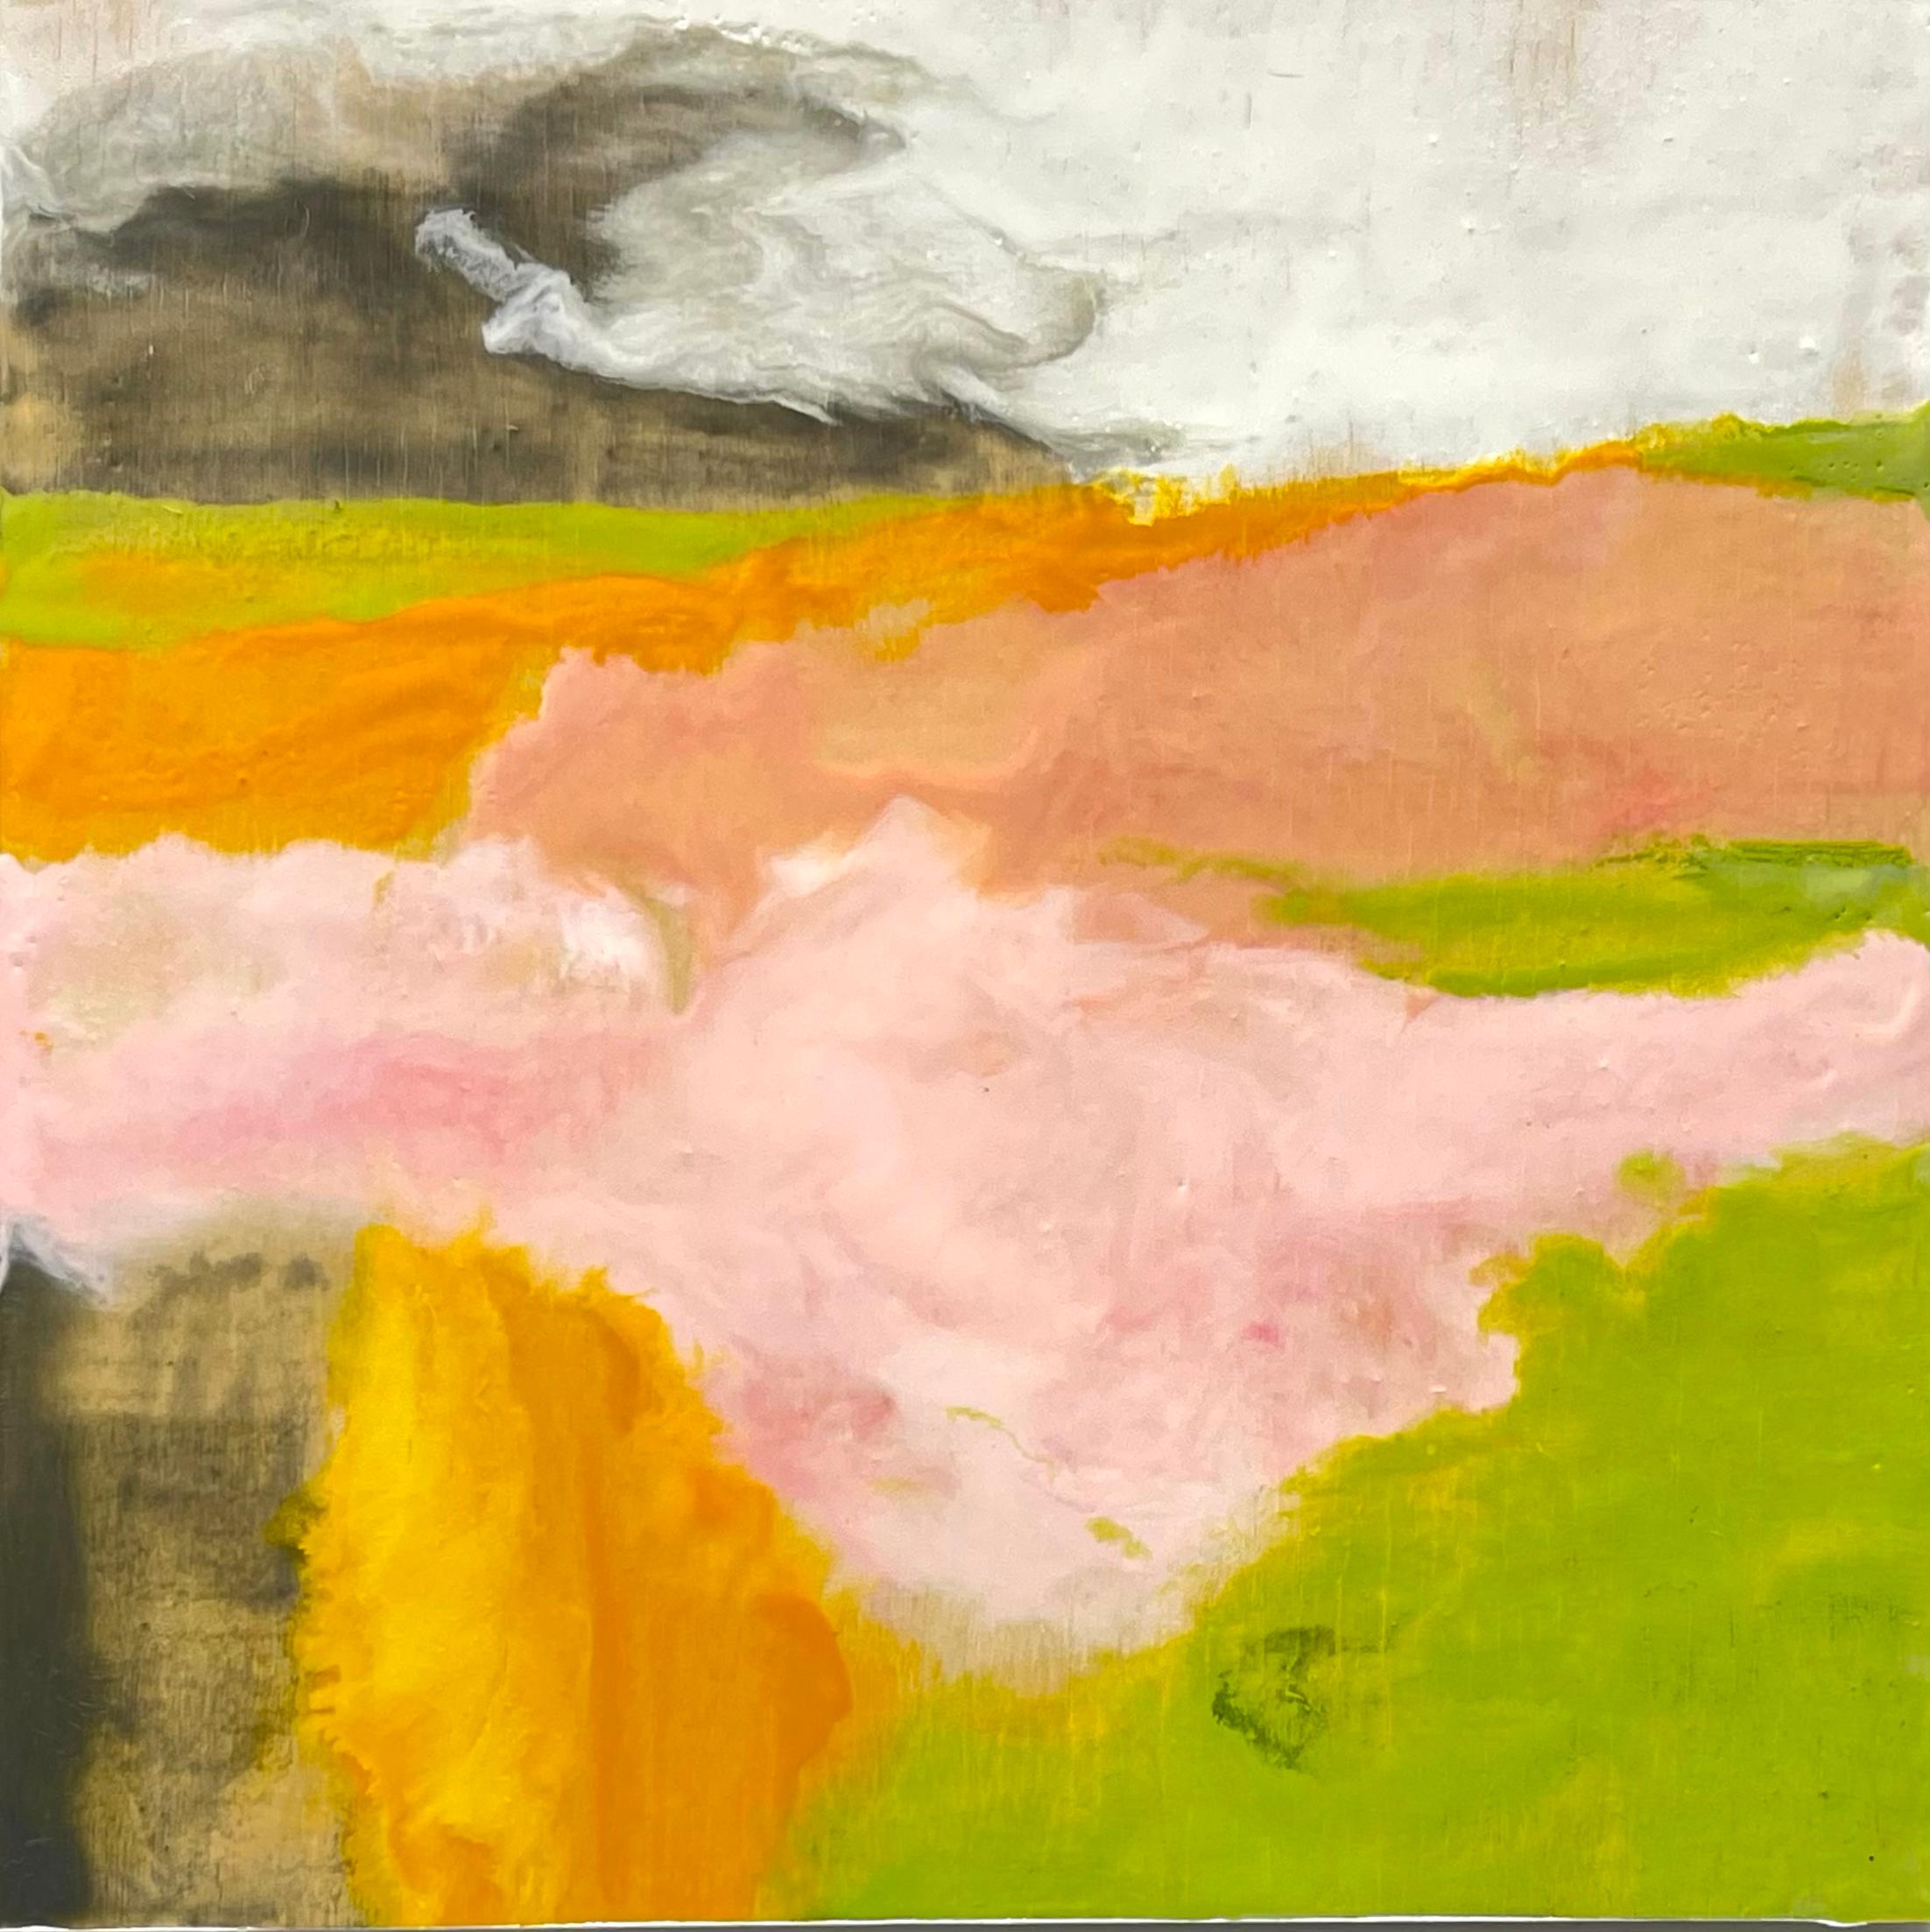 Kate Snow Landscape Painting - Dawn Landscape, impressionistic landscape painting